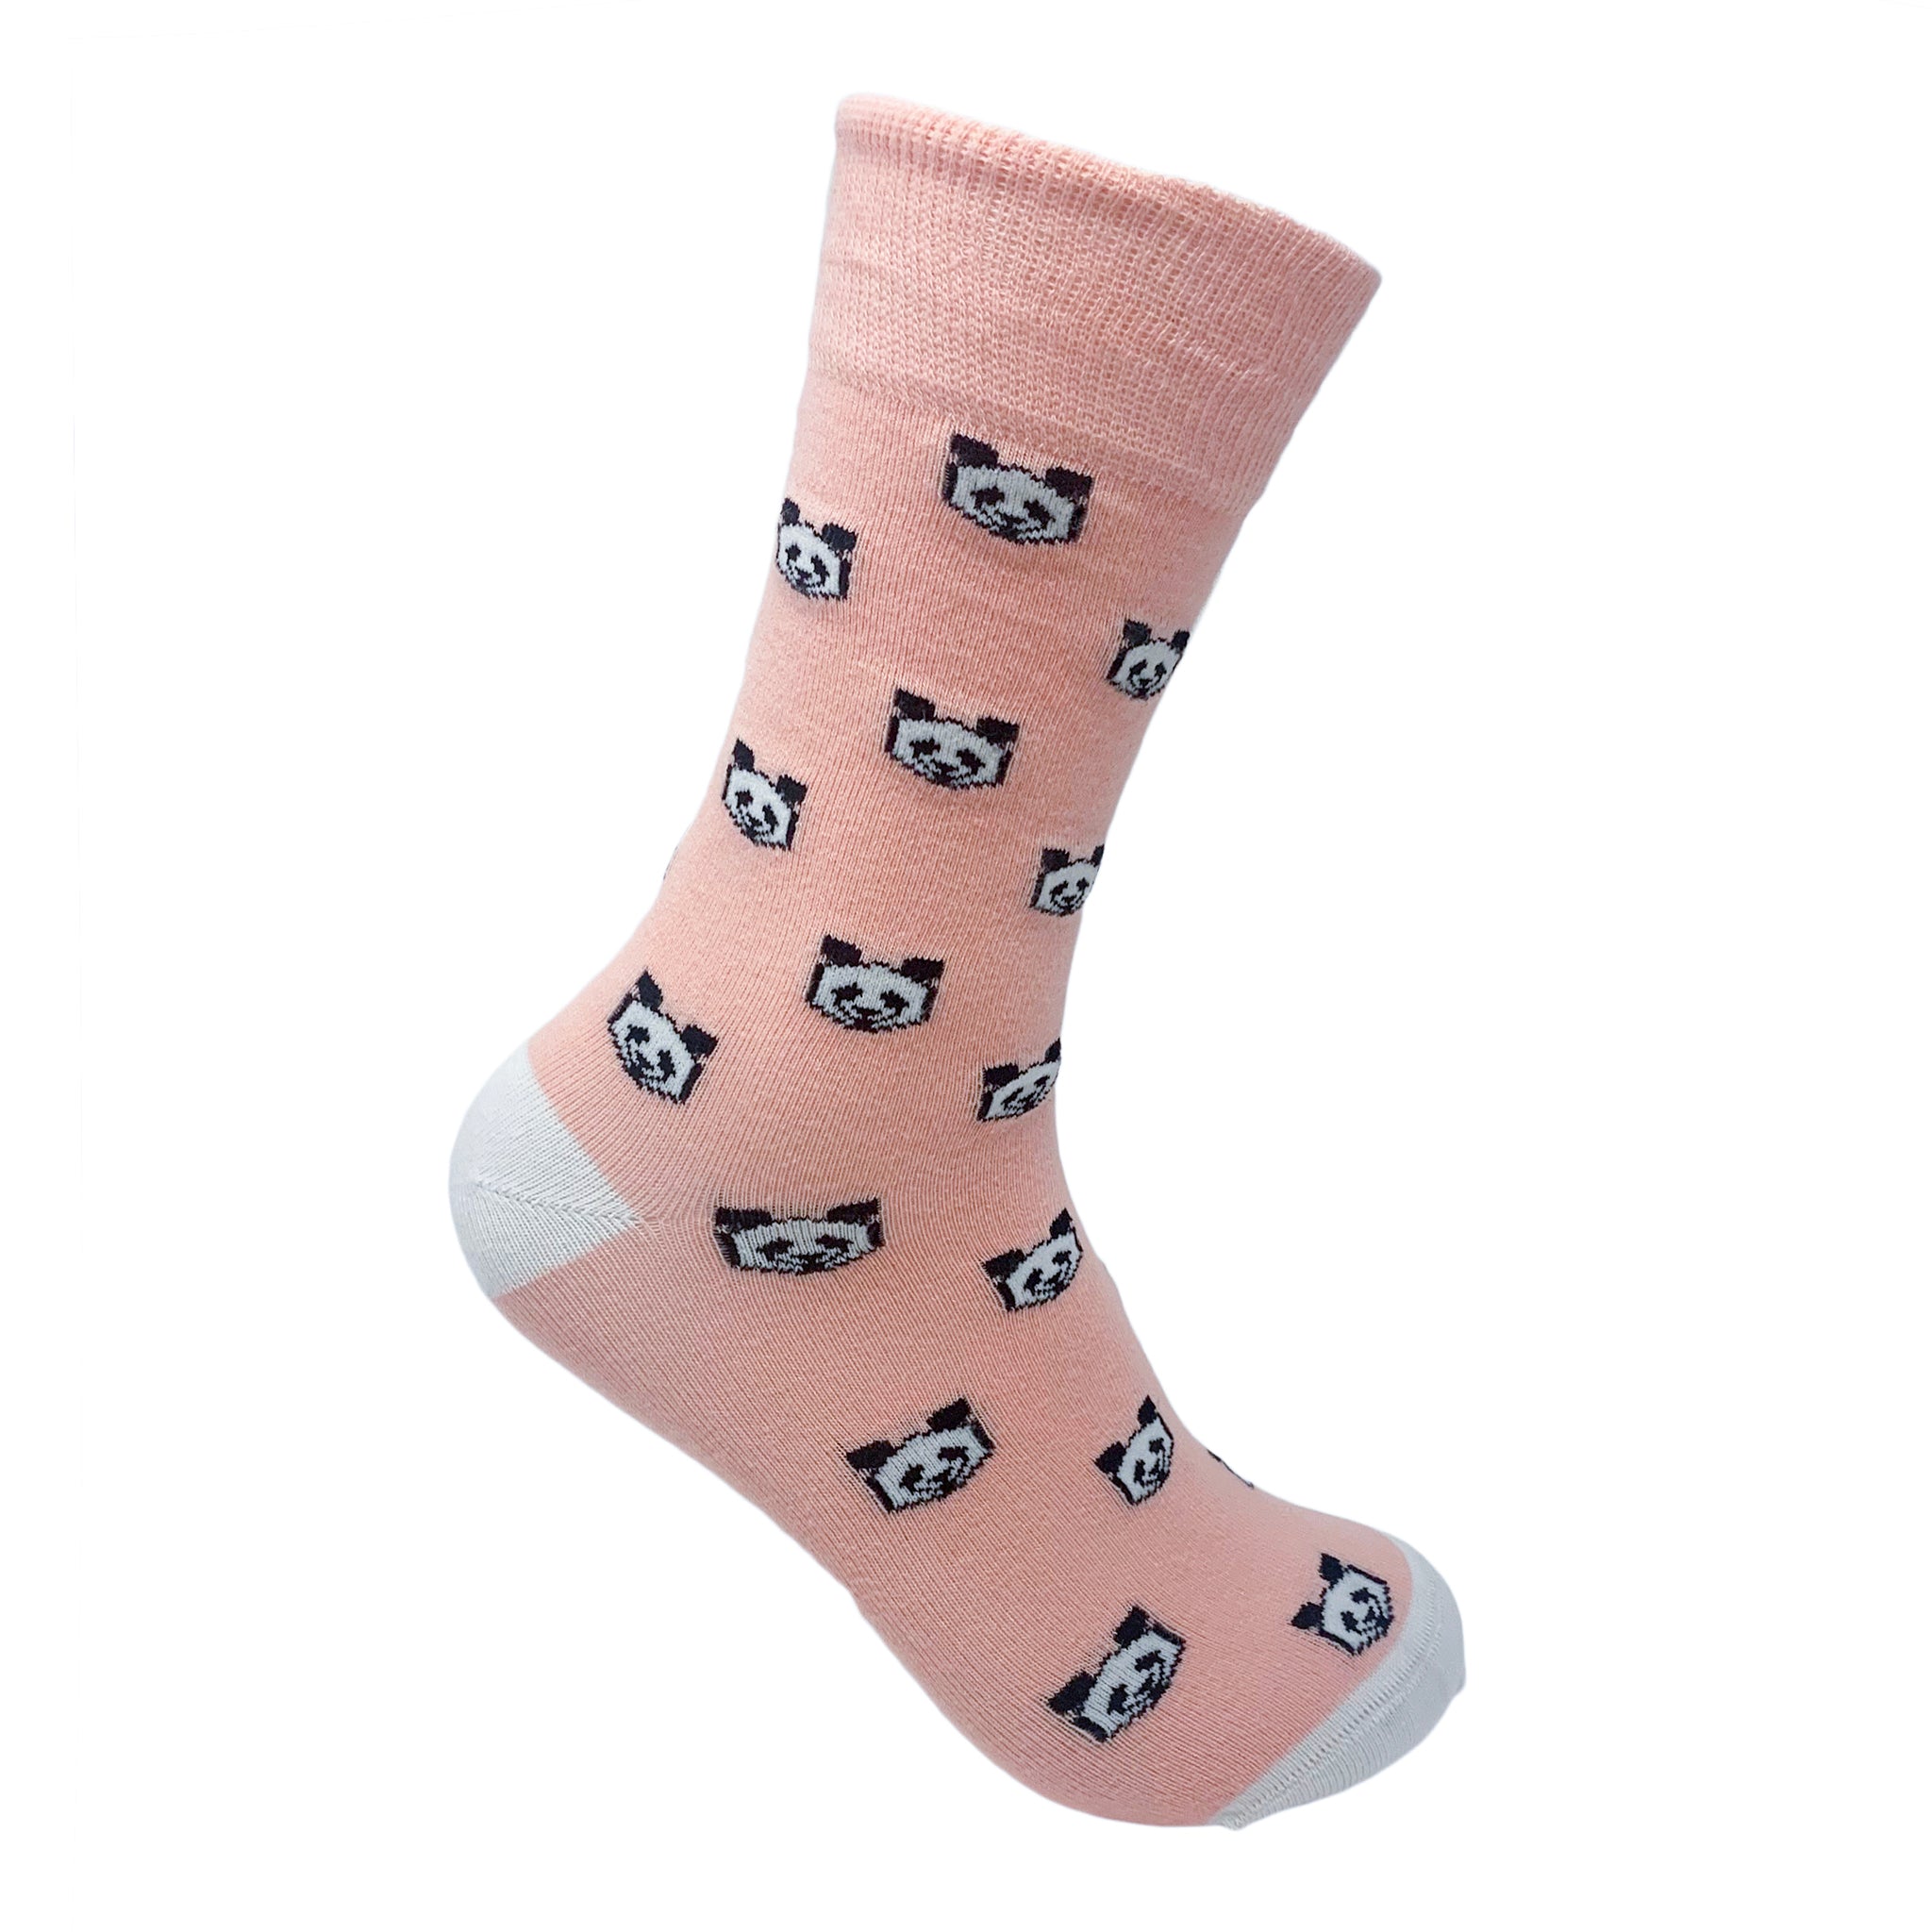 Panda Express - Pink Socks For Men